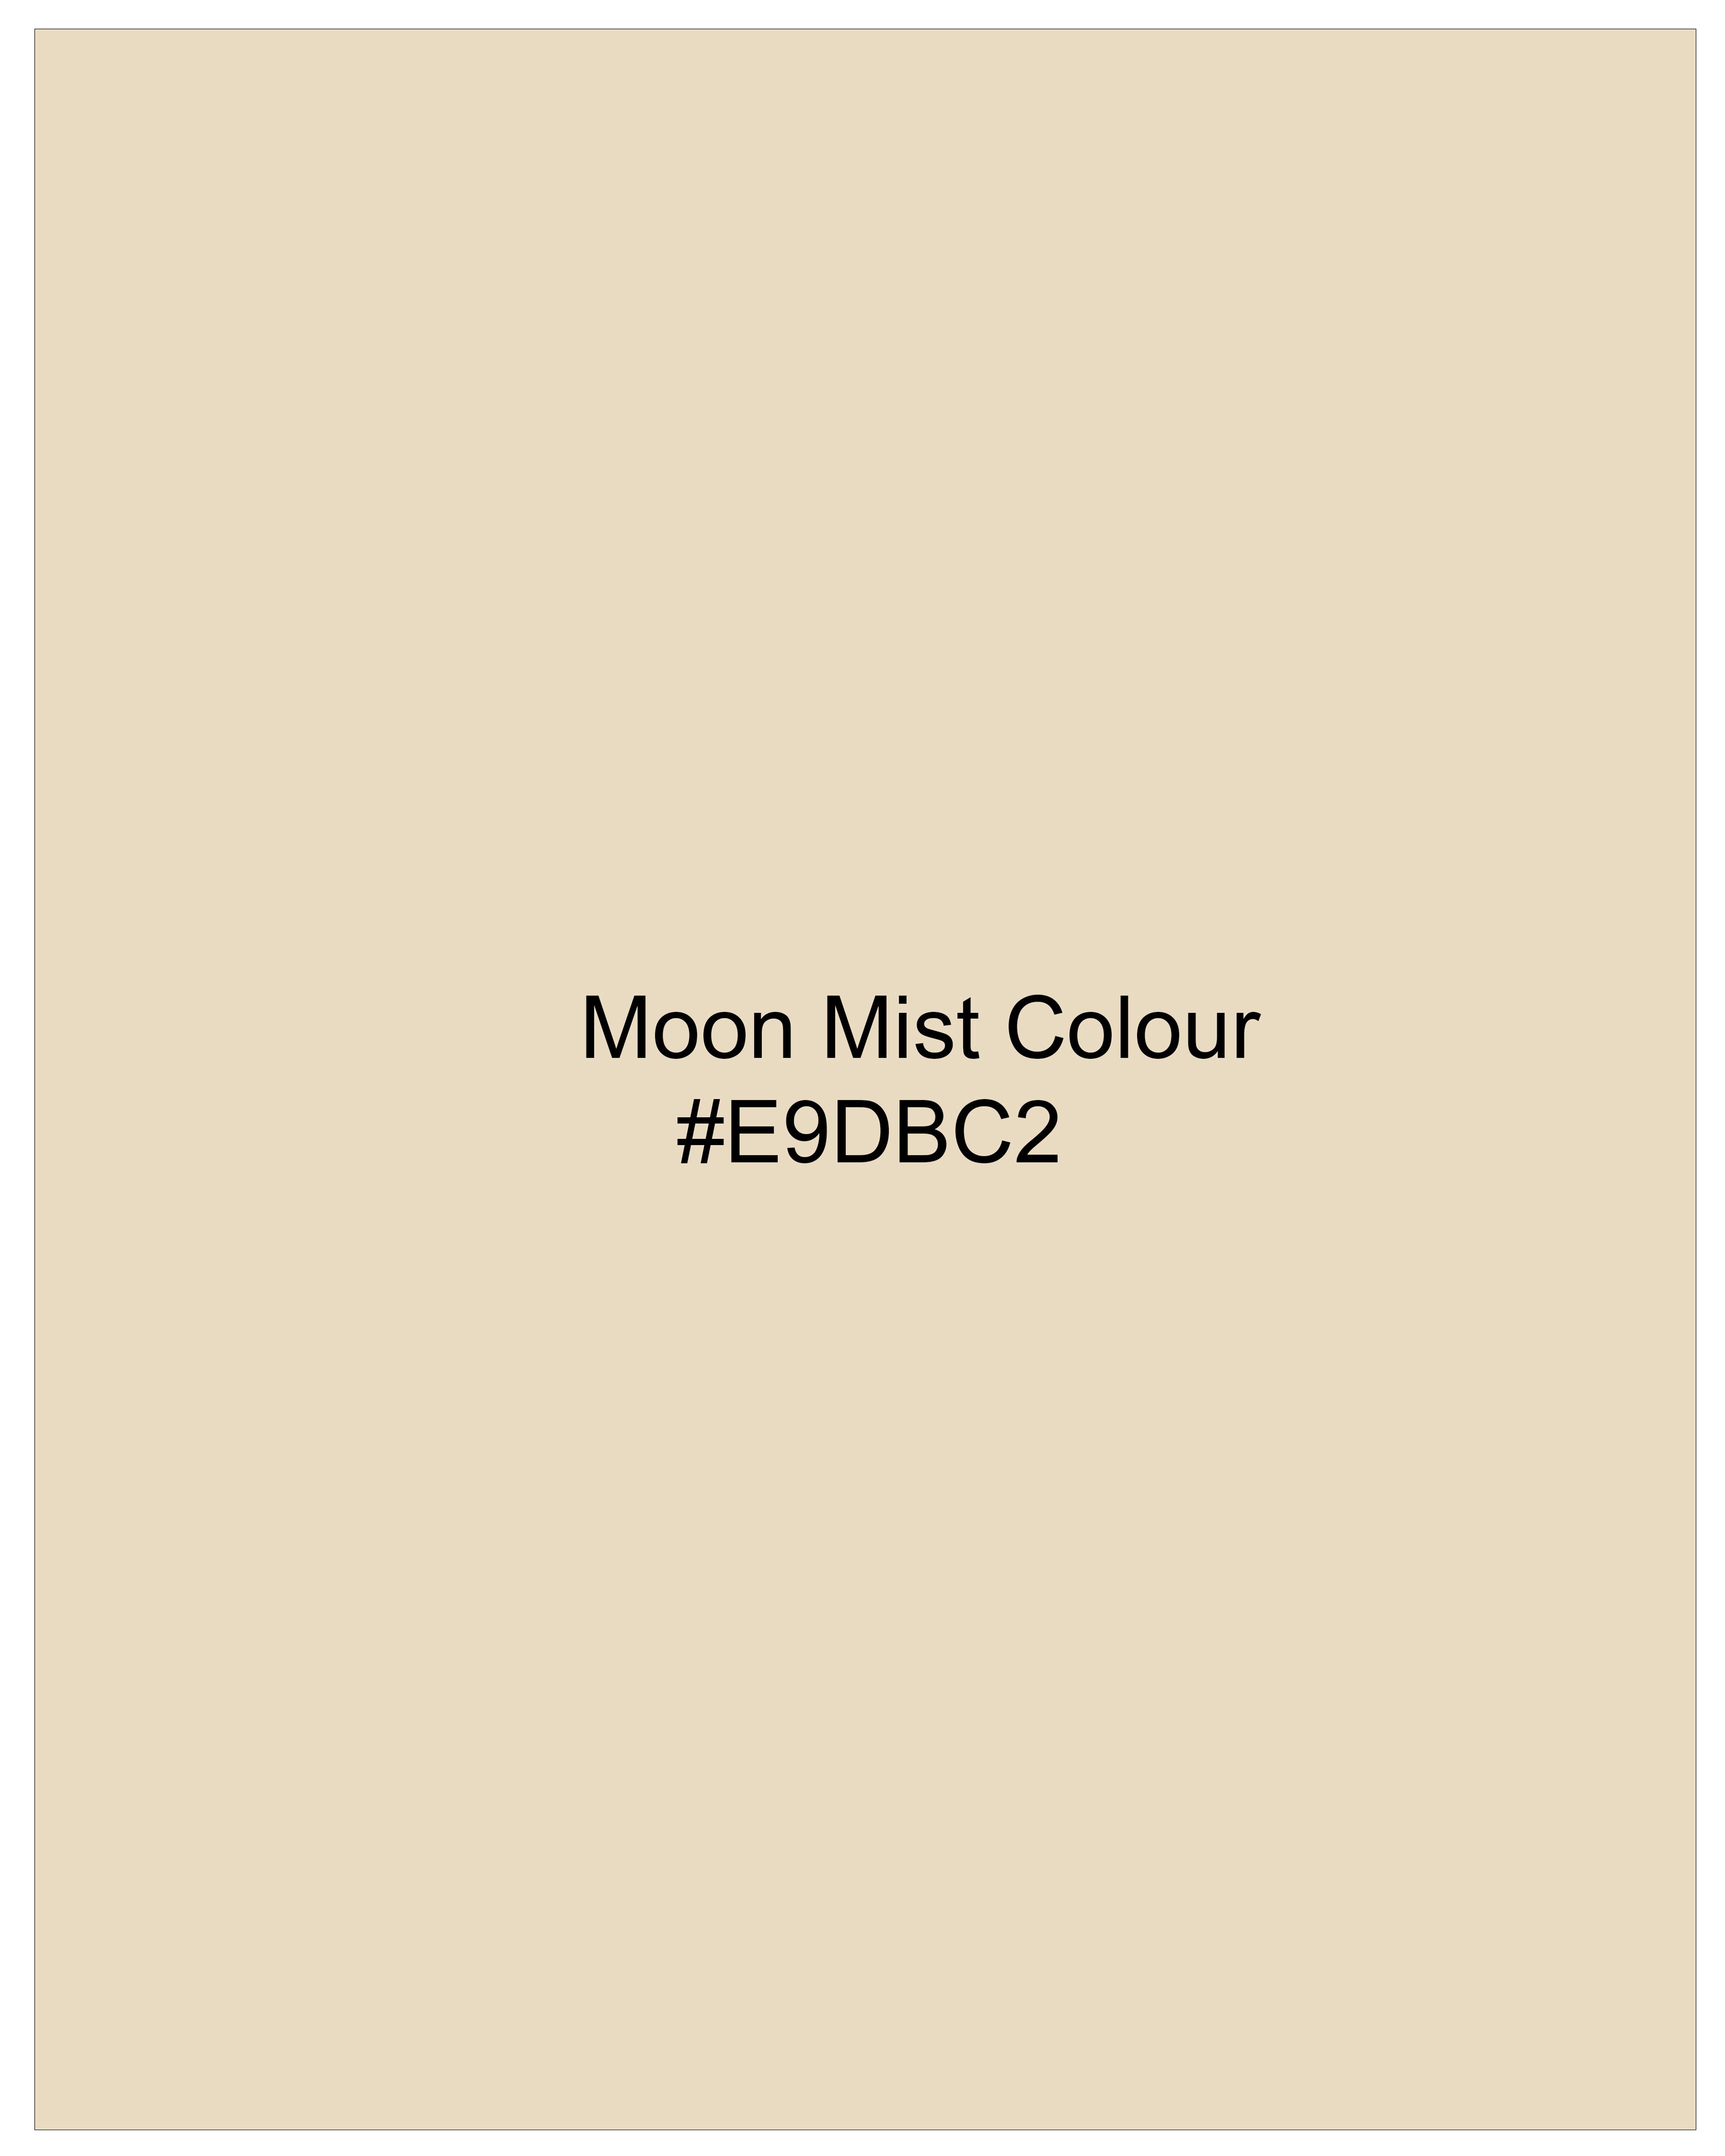 Moon Mist Beige Stretchable Premium Cotton traveler Pant T2672-28, T2672-30, T2672-32, T2672-34, T2672-36, T2672-38, T2672-40, T2672-42, T2672-44